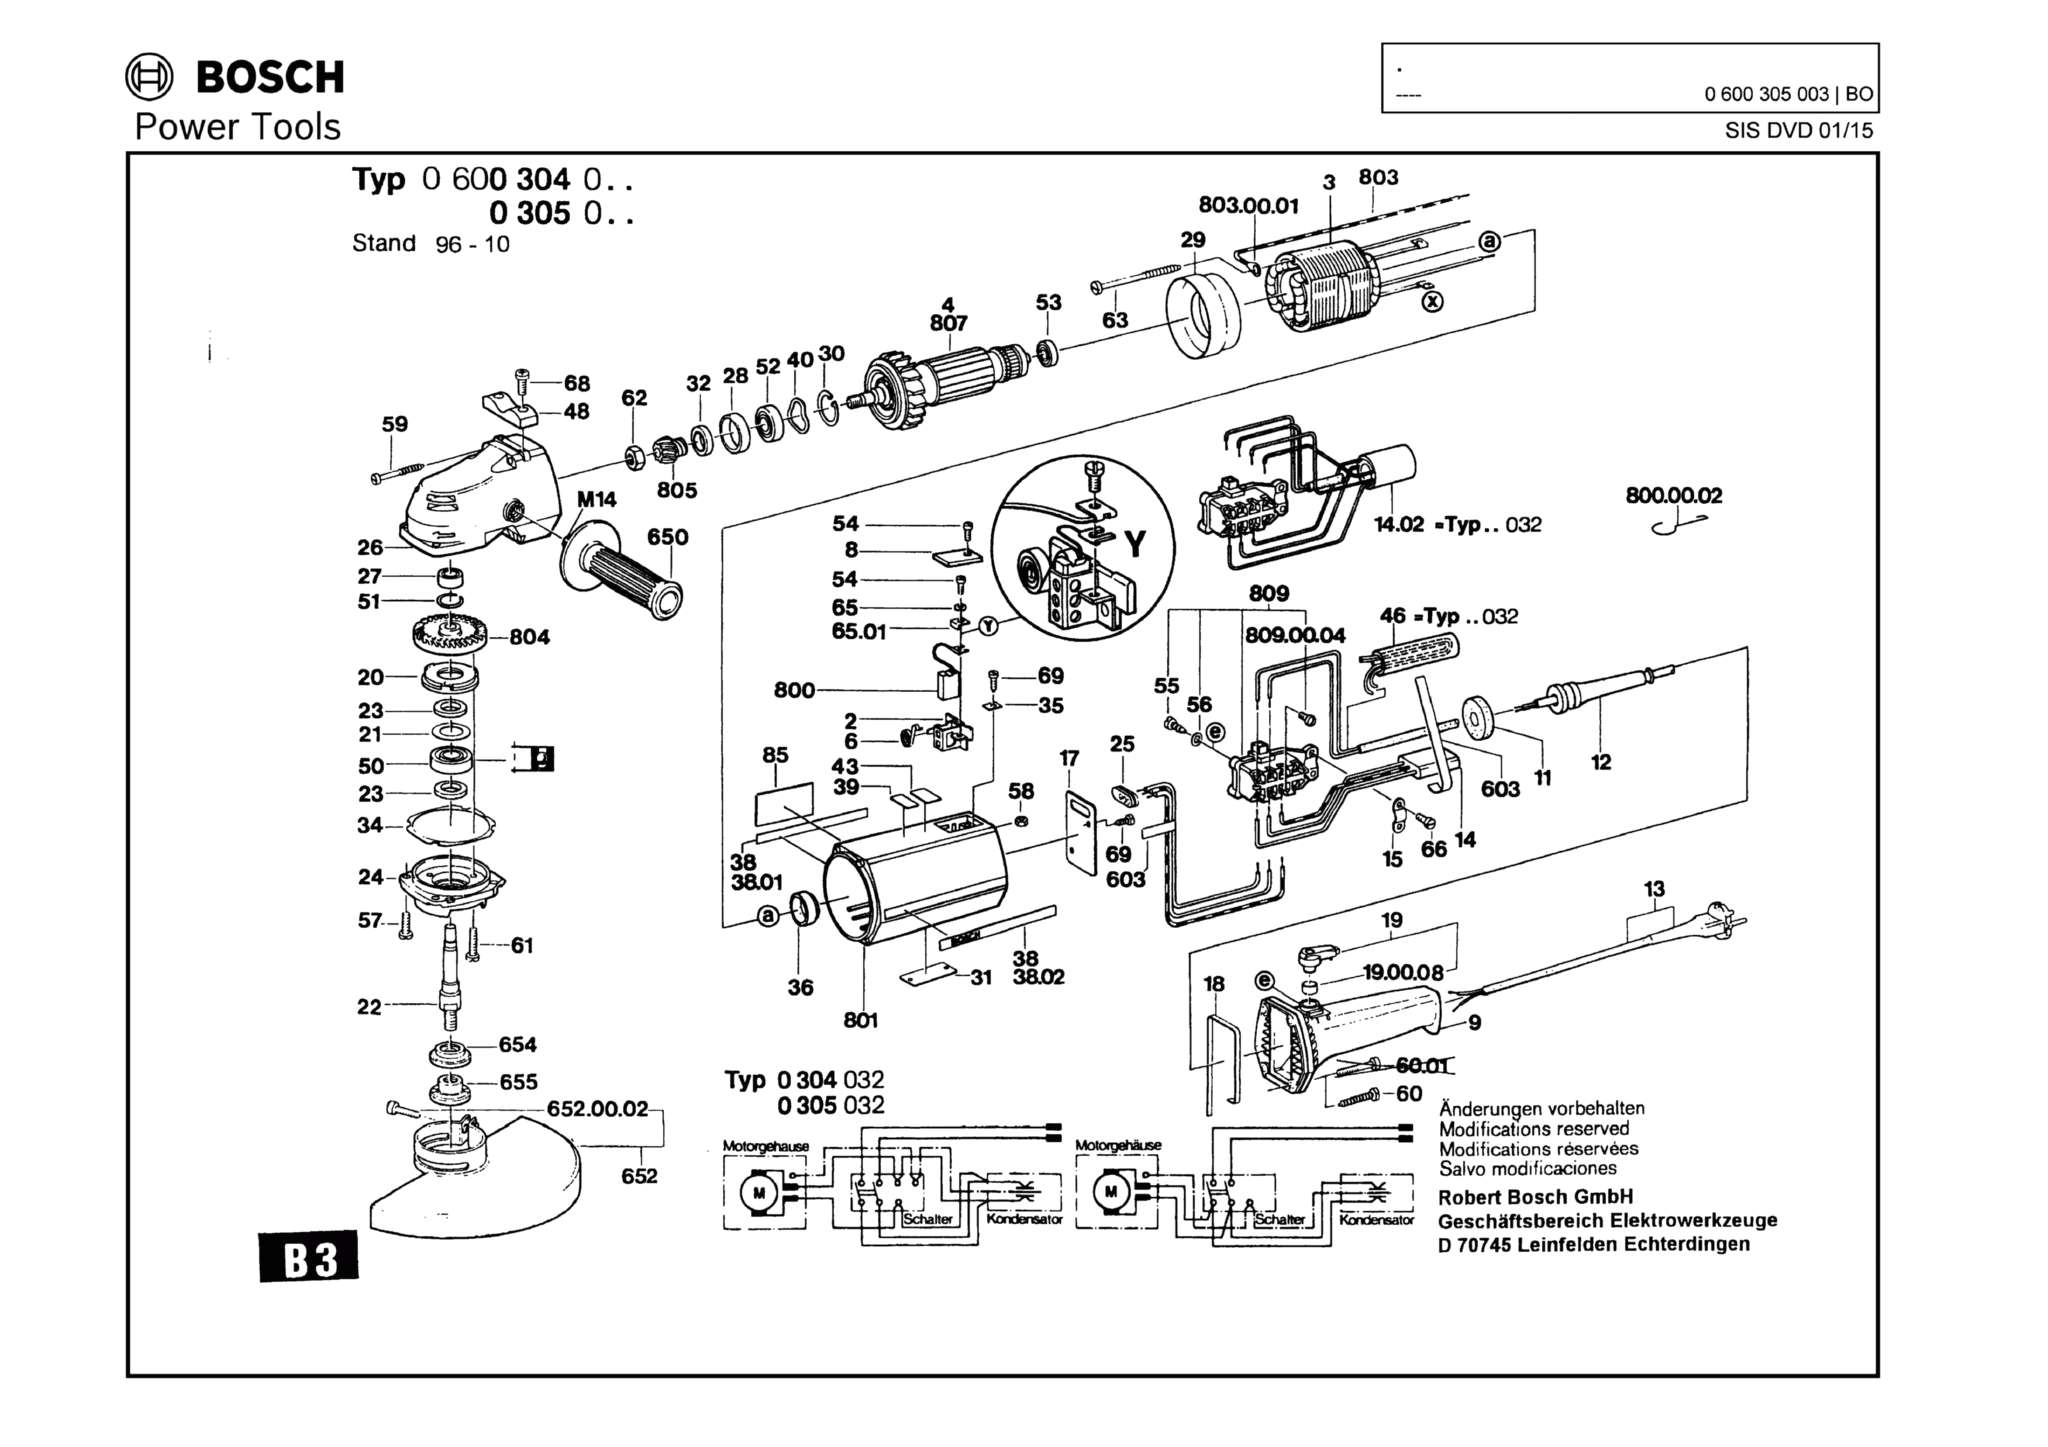 Запчасти, схема и деталировка Bosch (ТИП 0600305003)